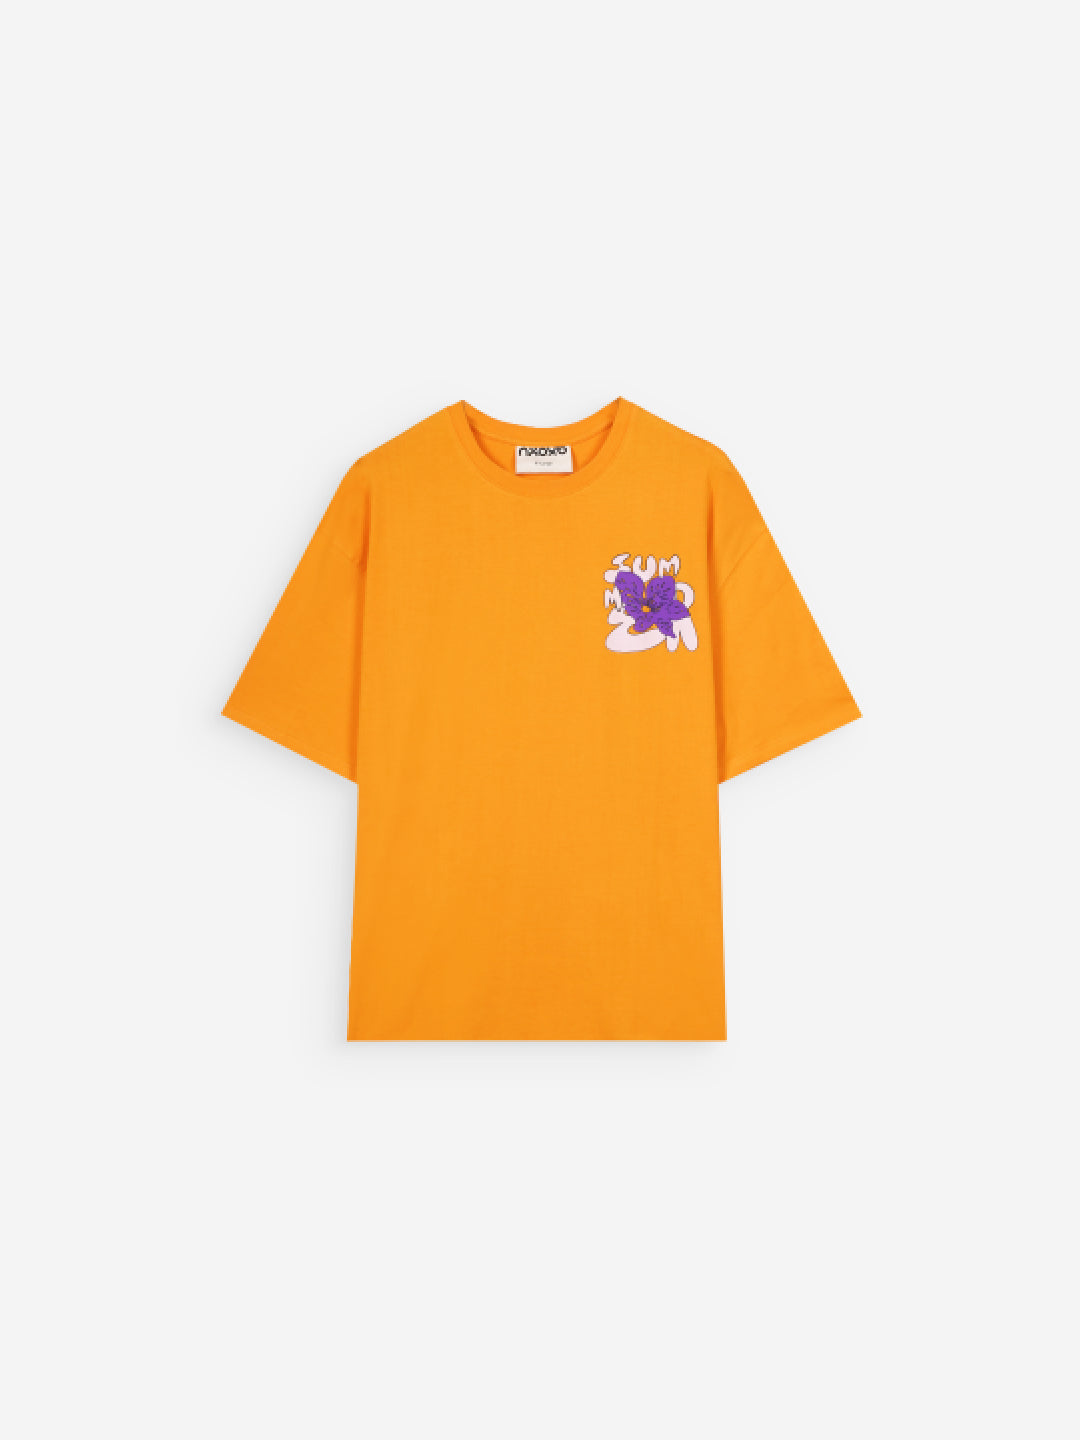 Orange Women's Oversized T-Shirts